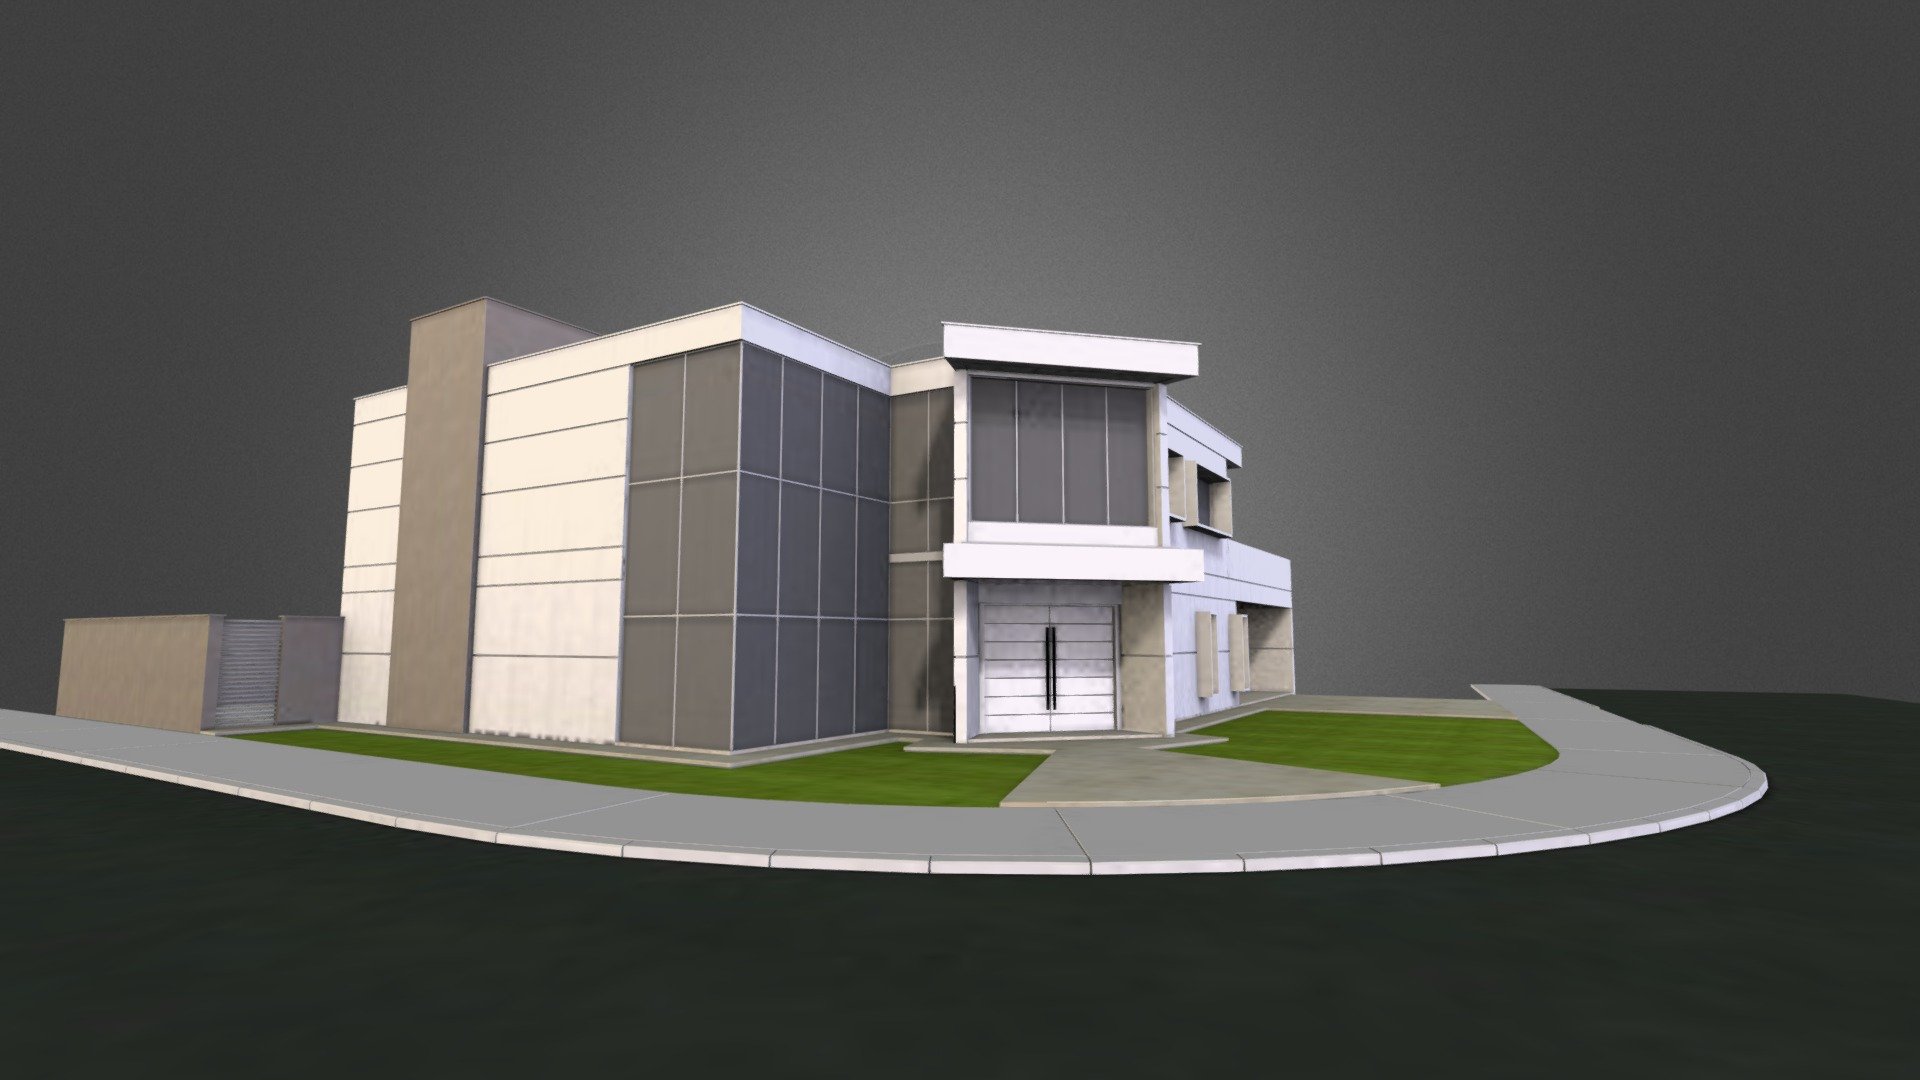 Material Test - Modern House - 3D model by Takashi (@takashidesign) 3d model